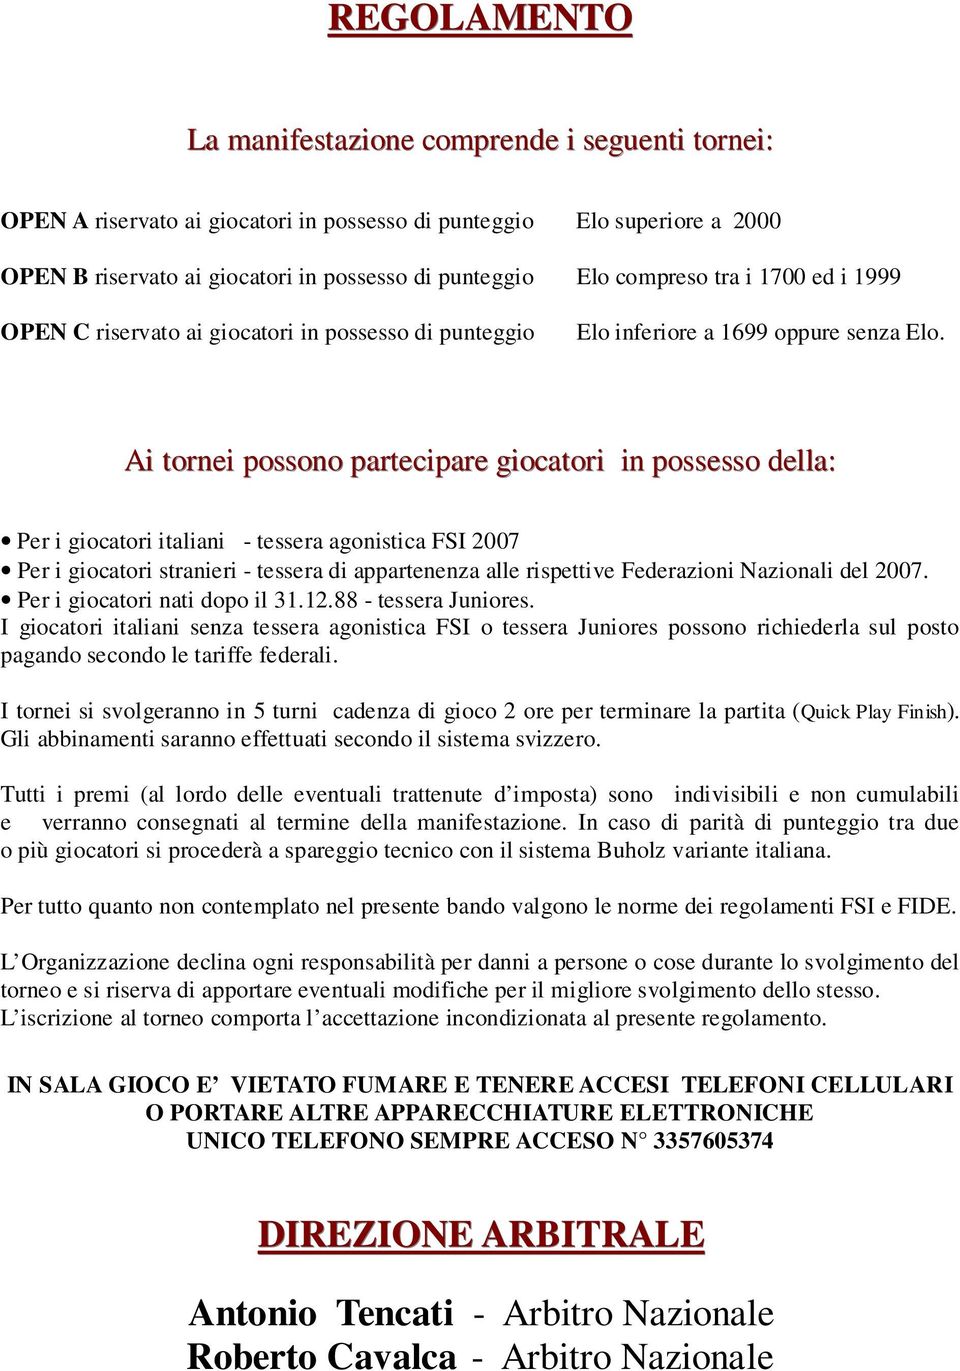 Ai tornei possono partecipare giocatori in possesso della: Per i giocatori italiani - tessera agonistica FSI 2007 Per i giocatori stranieri - tessera di appartenenza alle rispettive Federazioni